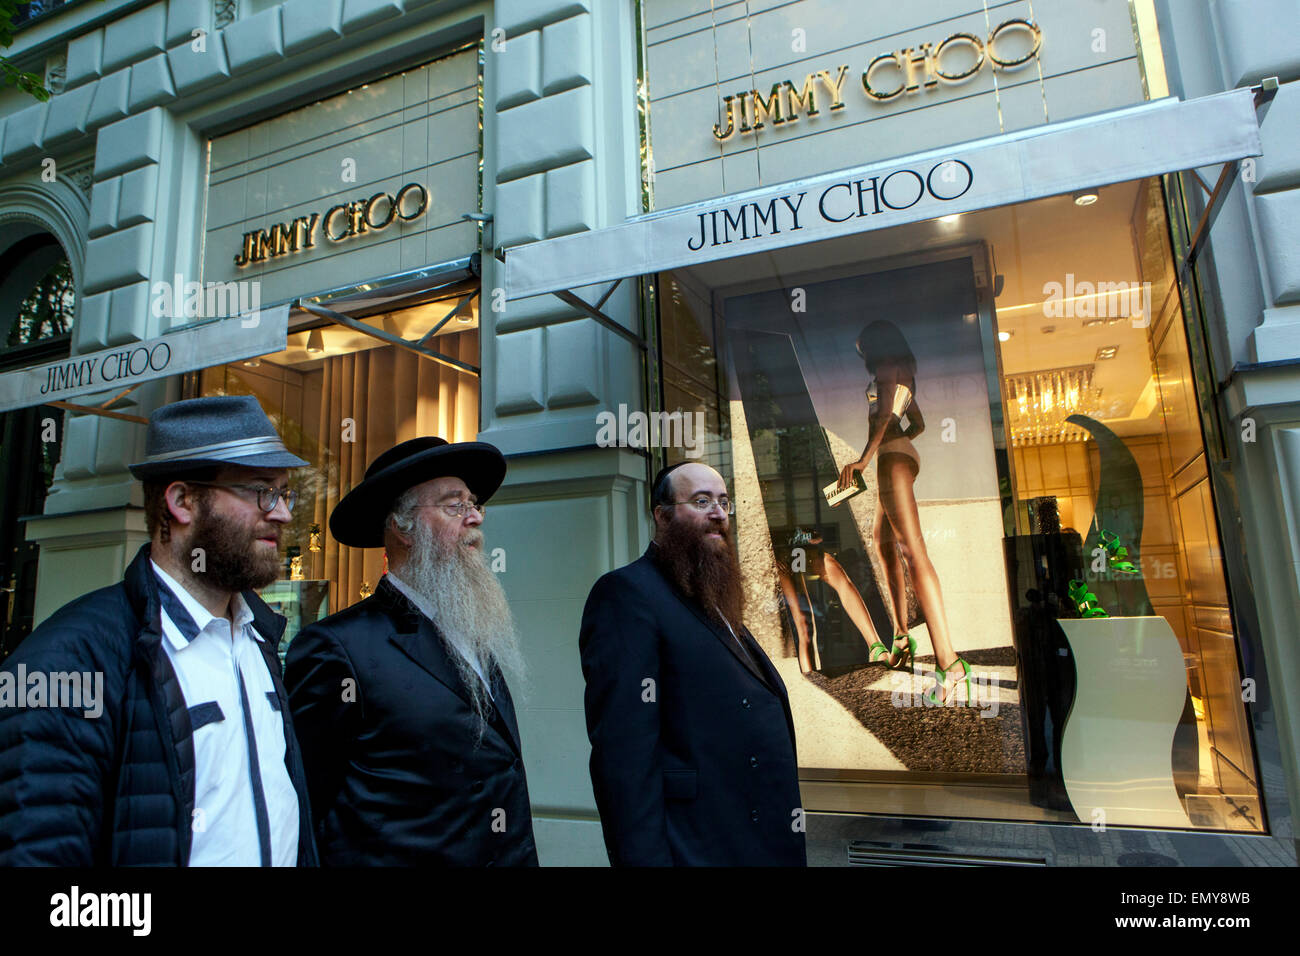 Rue commerçante de Prague Juifs orthodoxes devant le magasin de mode Jimmy Choo, rue Parizska Prague, Vieille ville, République Tchèque les Juifs voyagent Banque D'Images